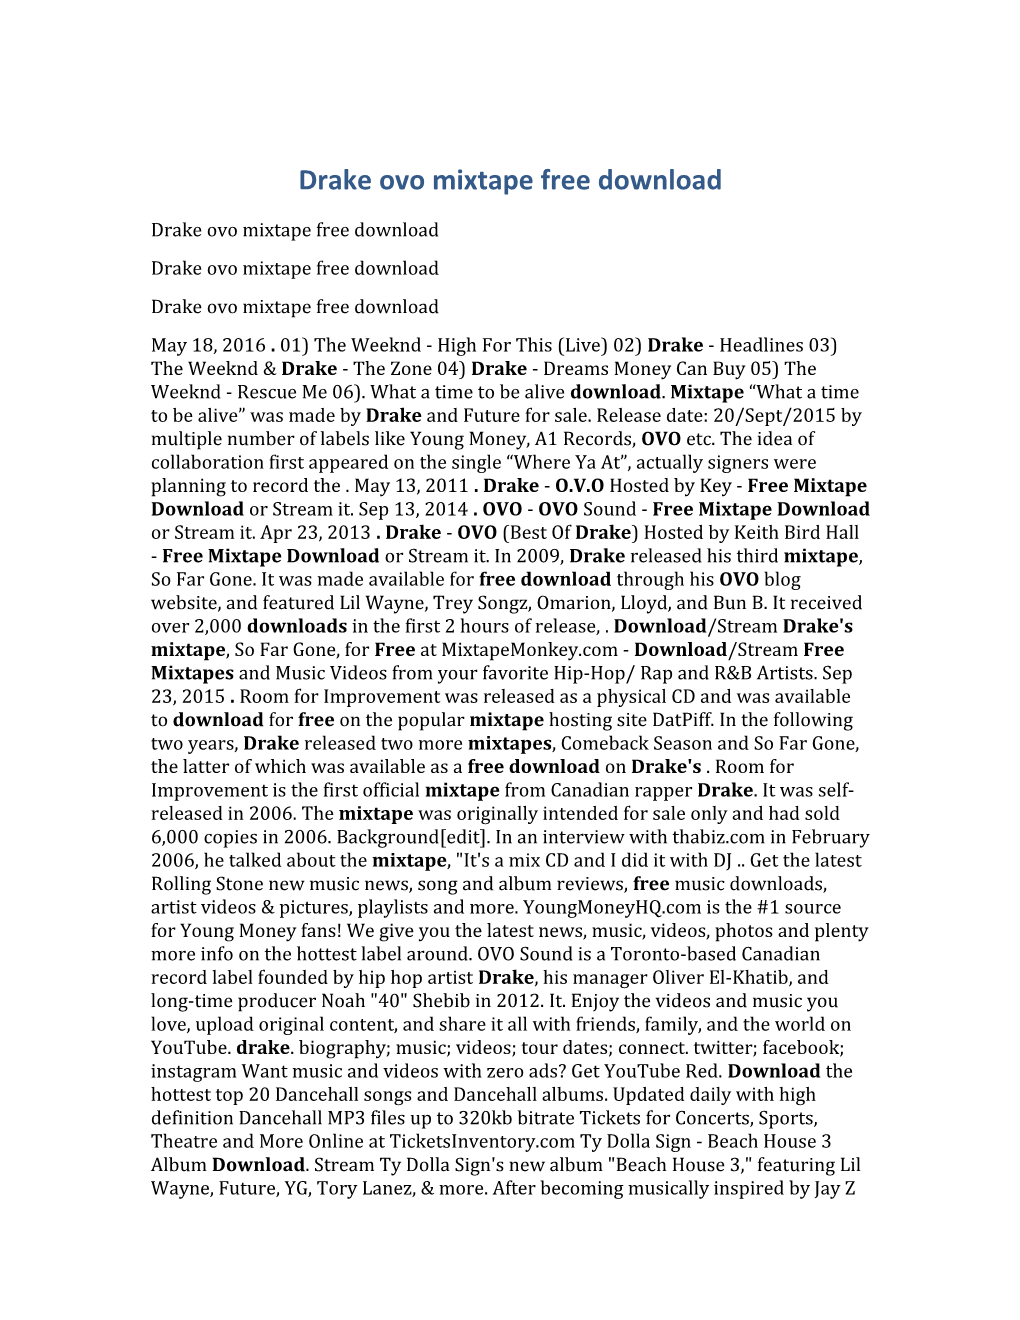 Drake Ovo Mixtape Free Download